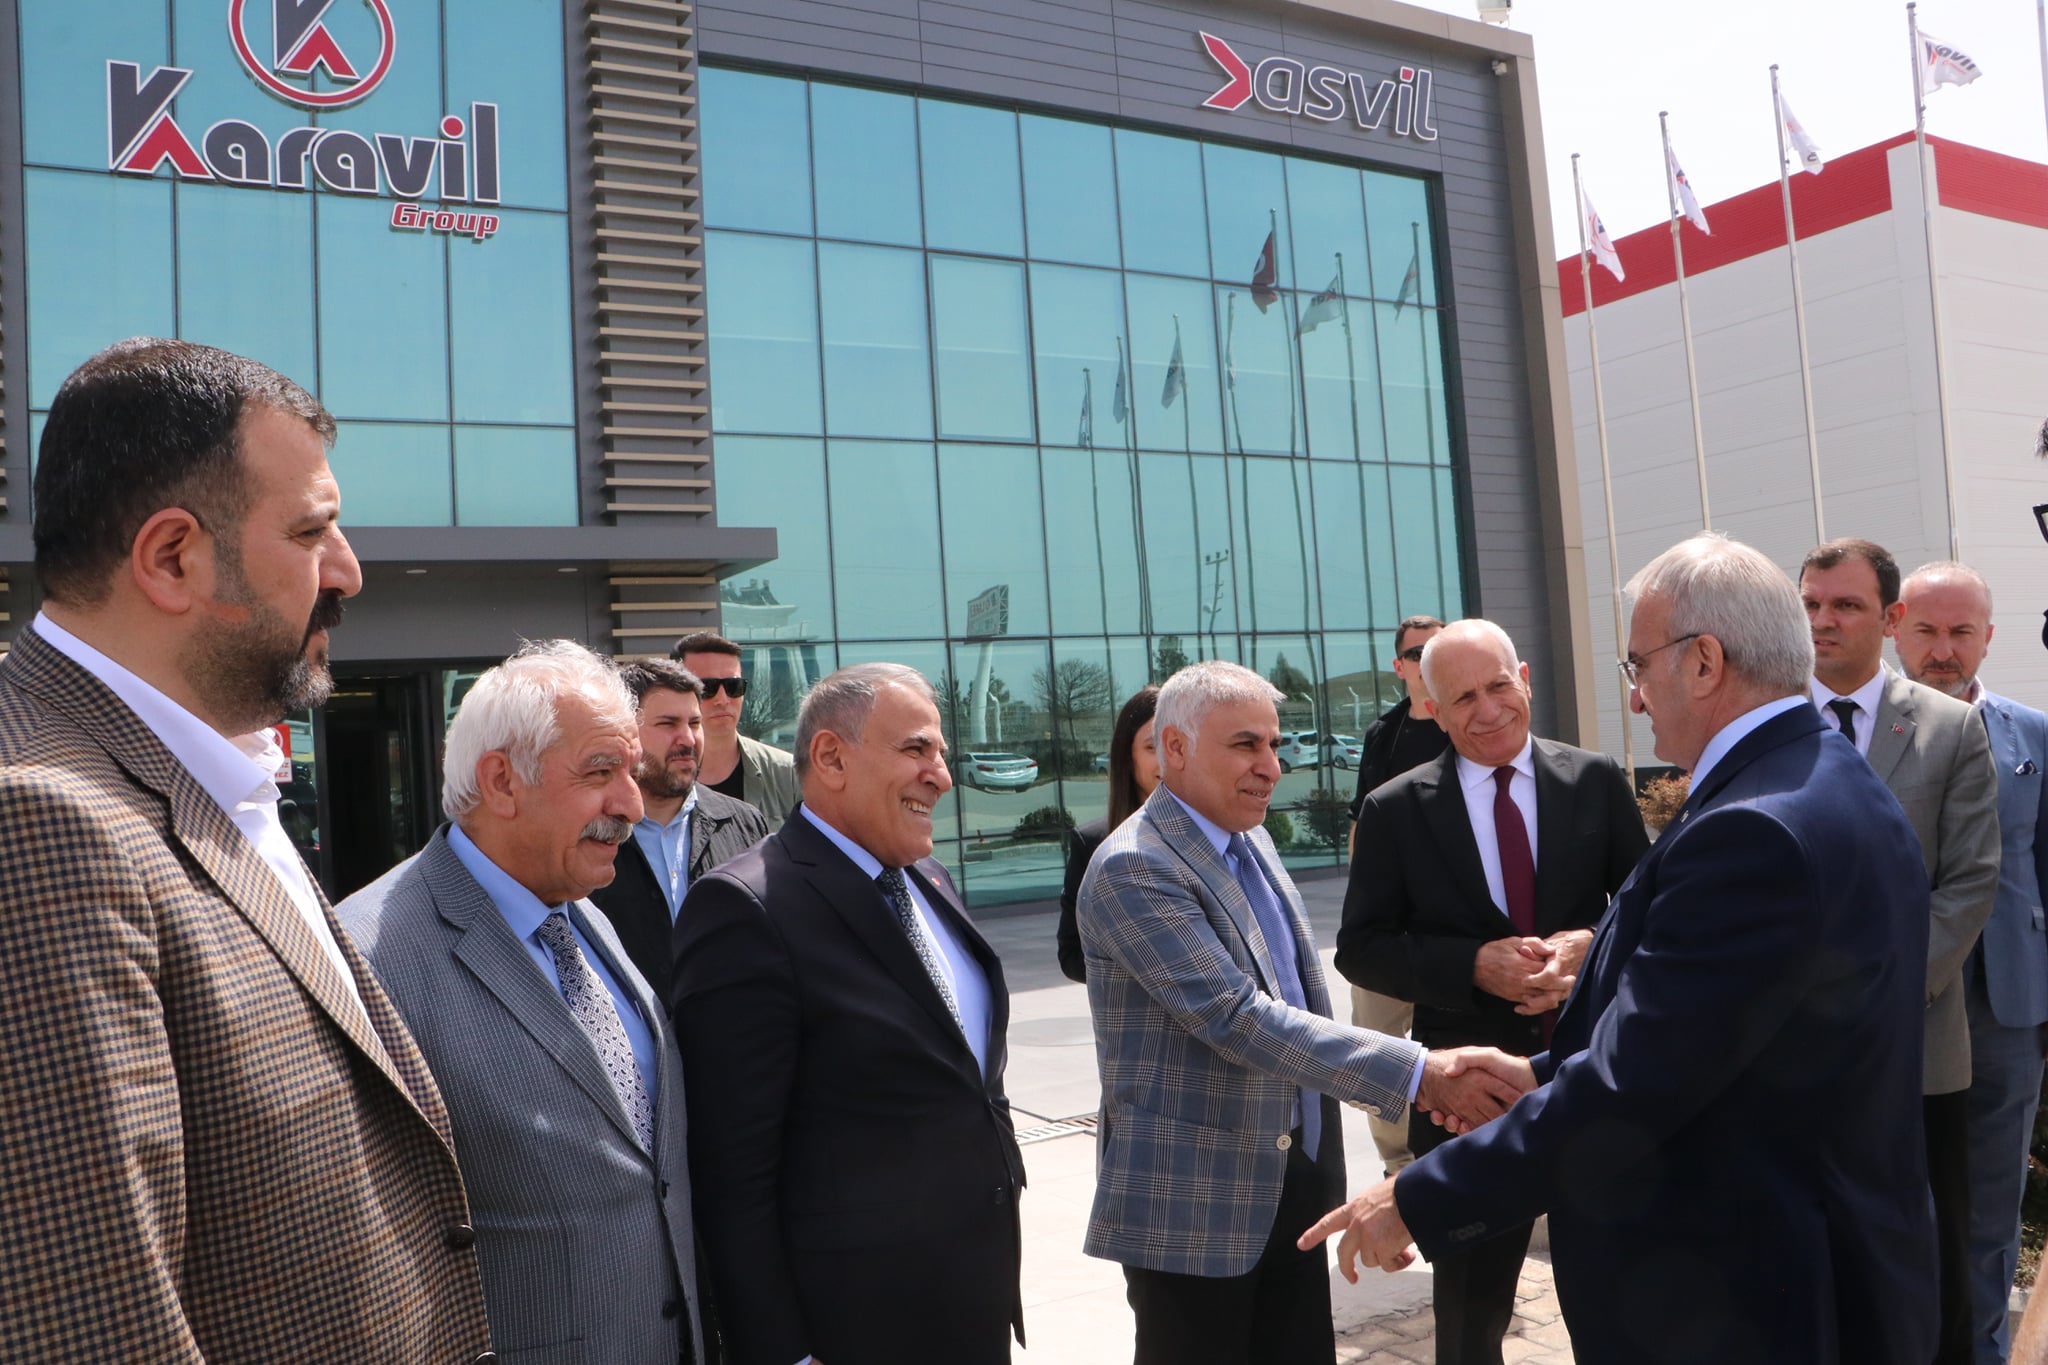 Diyarbakır Valisi ve OSB Müteşebbis Heyet Başkanı Sayın Münir Karaloğlu Karavil Group Firmasını ziyaret ettii